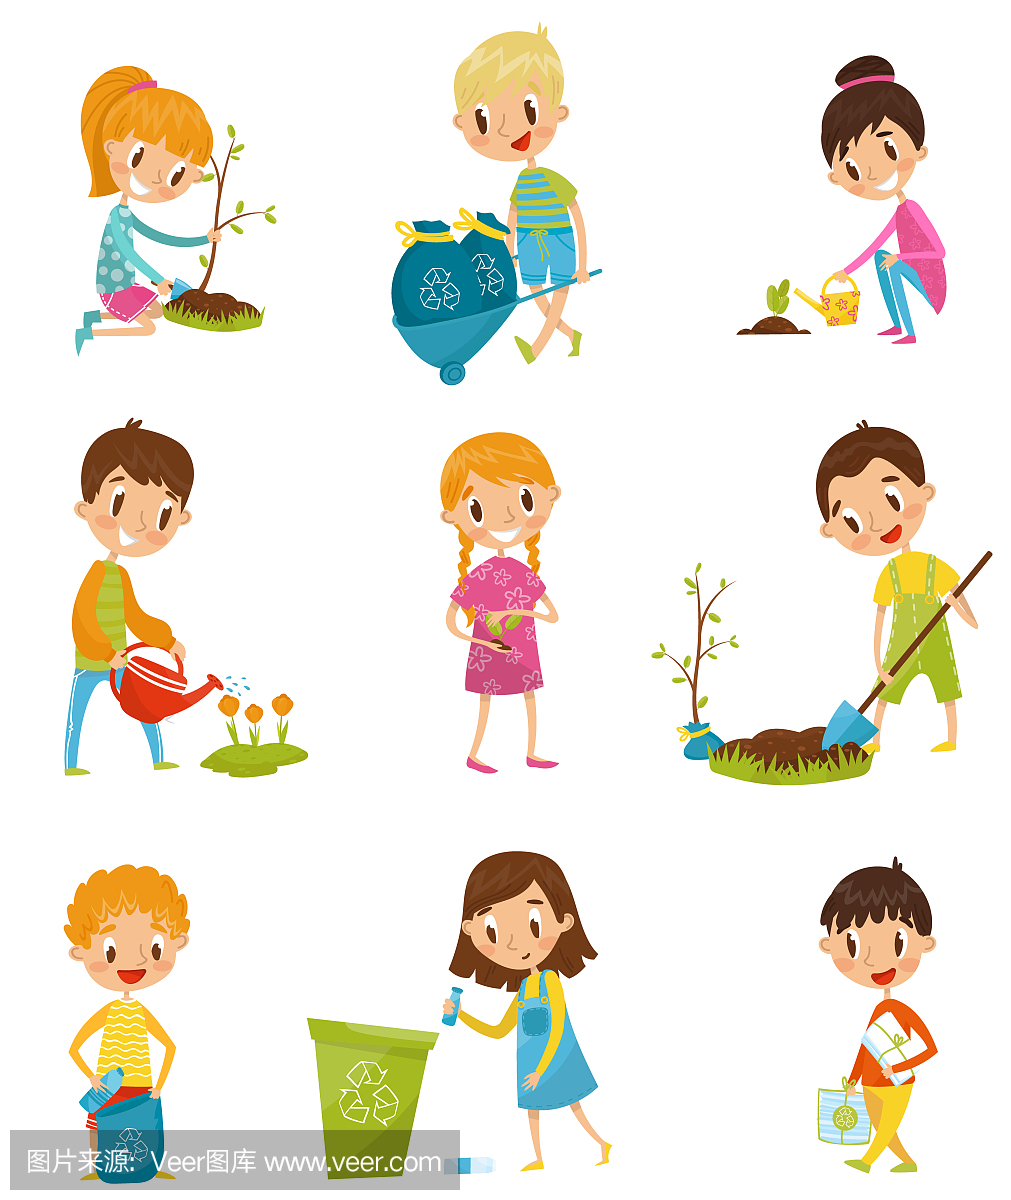 可爱的孩子们园艺和捡垃圾集,男孩和女孩种植